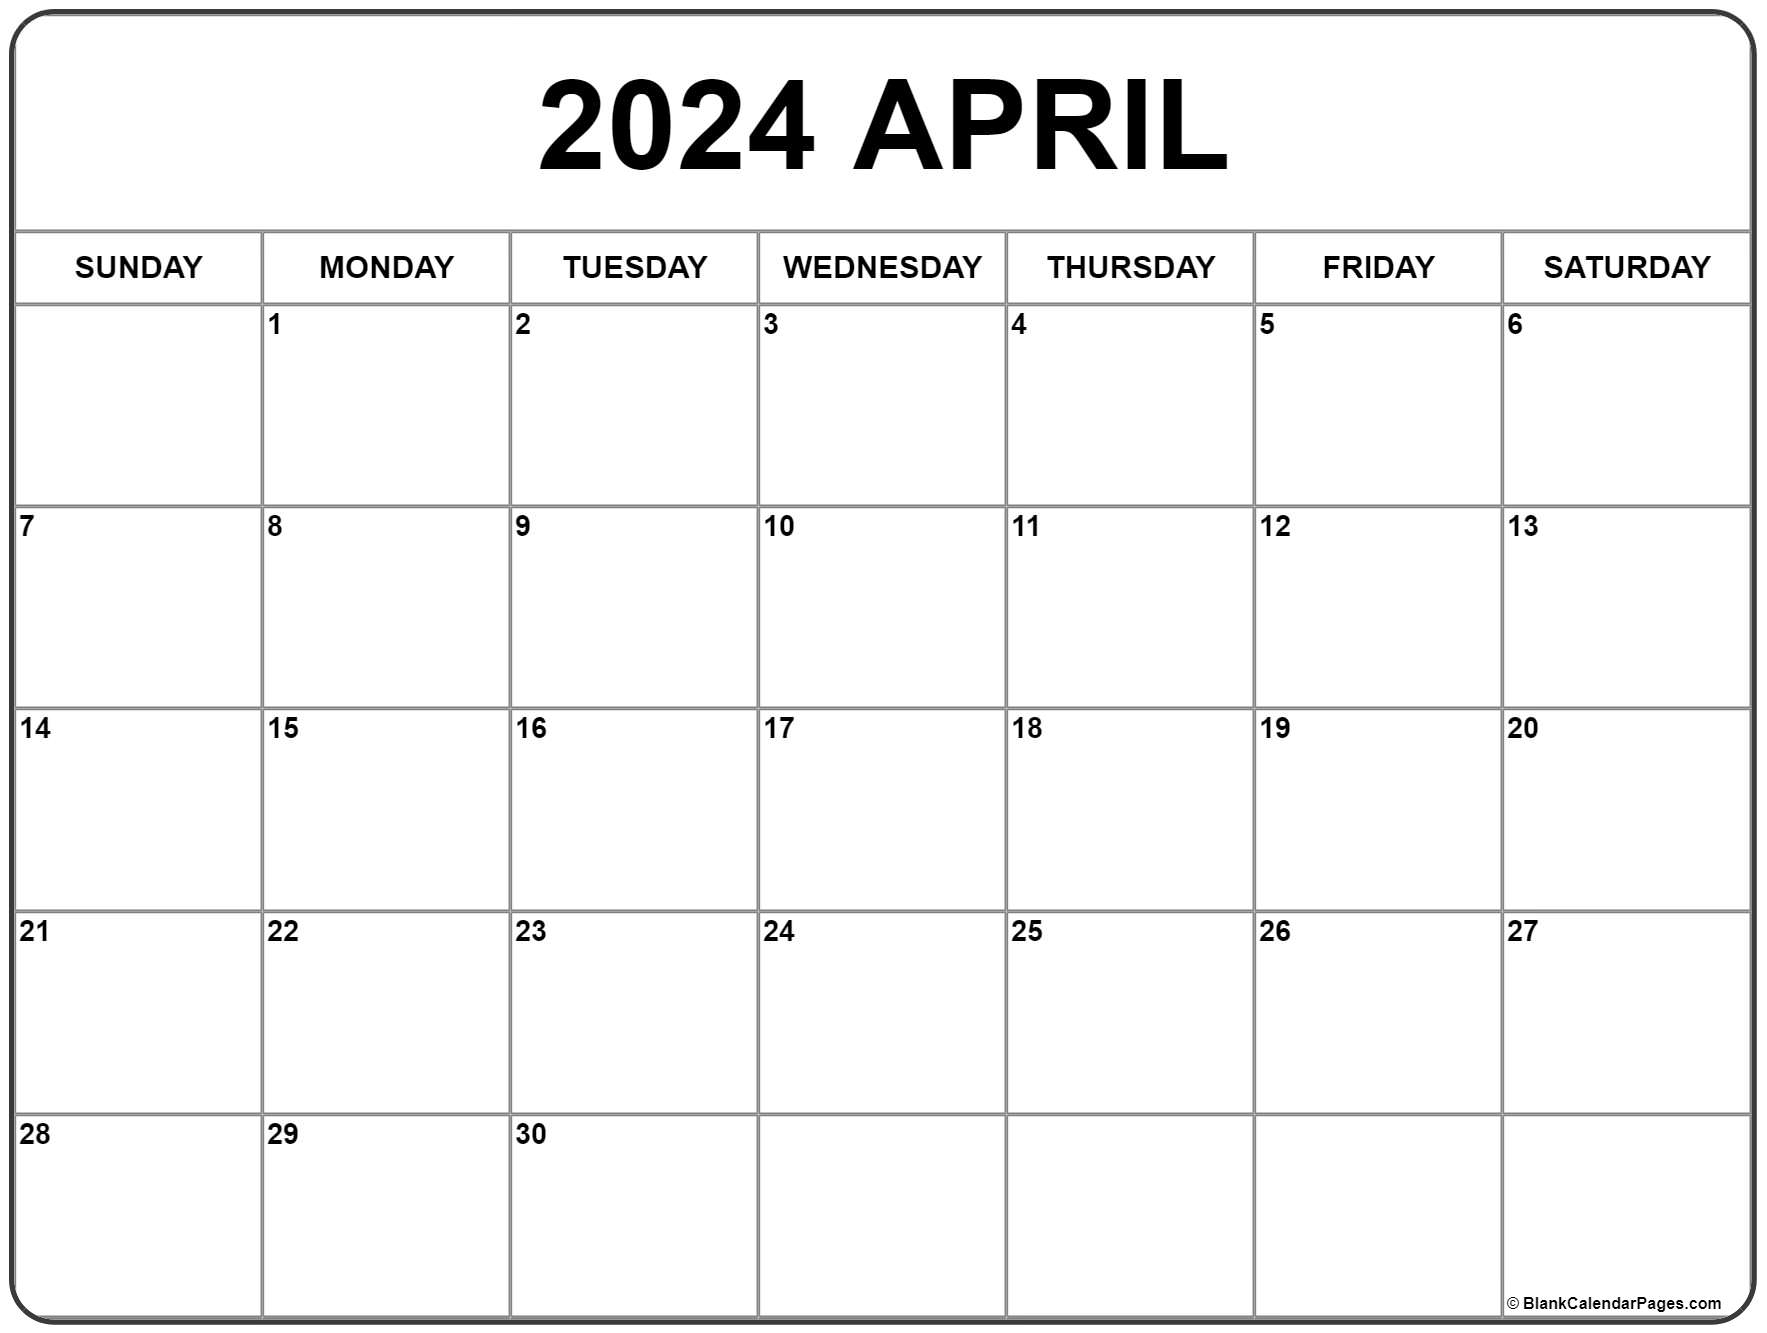 April 2024 Calendar | Free Printable Calendar for April 2024 Free Printable Calendar